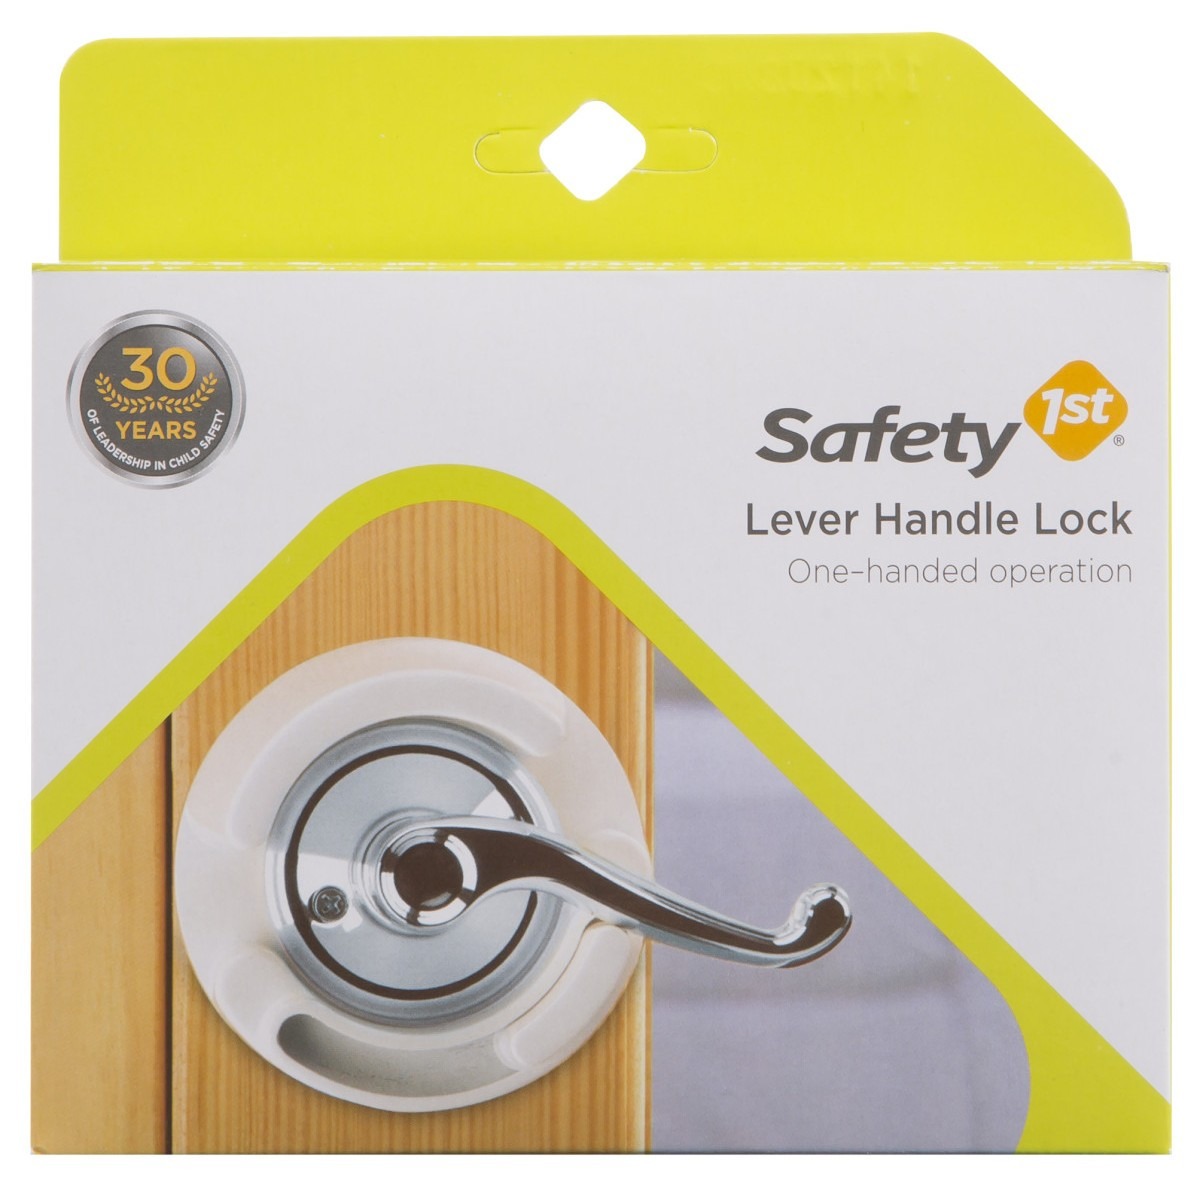 Best ideas about DIY Baby Proof Lever Door Handles
. Save or Pin Baby Proof Door Handles Lever handballtunisie Now.